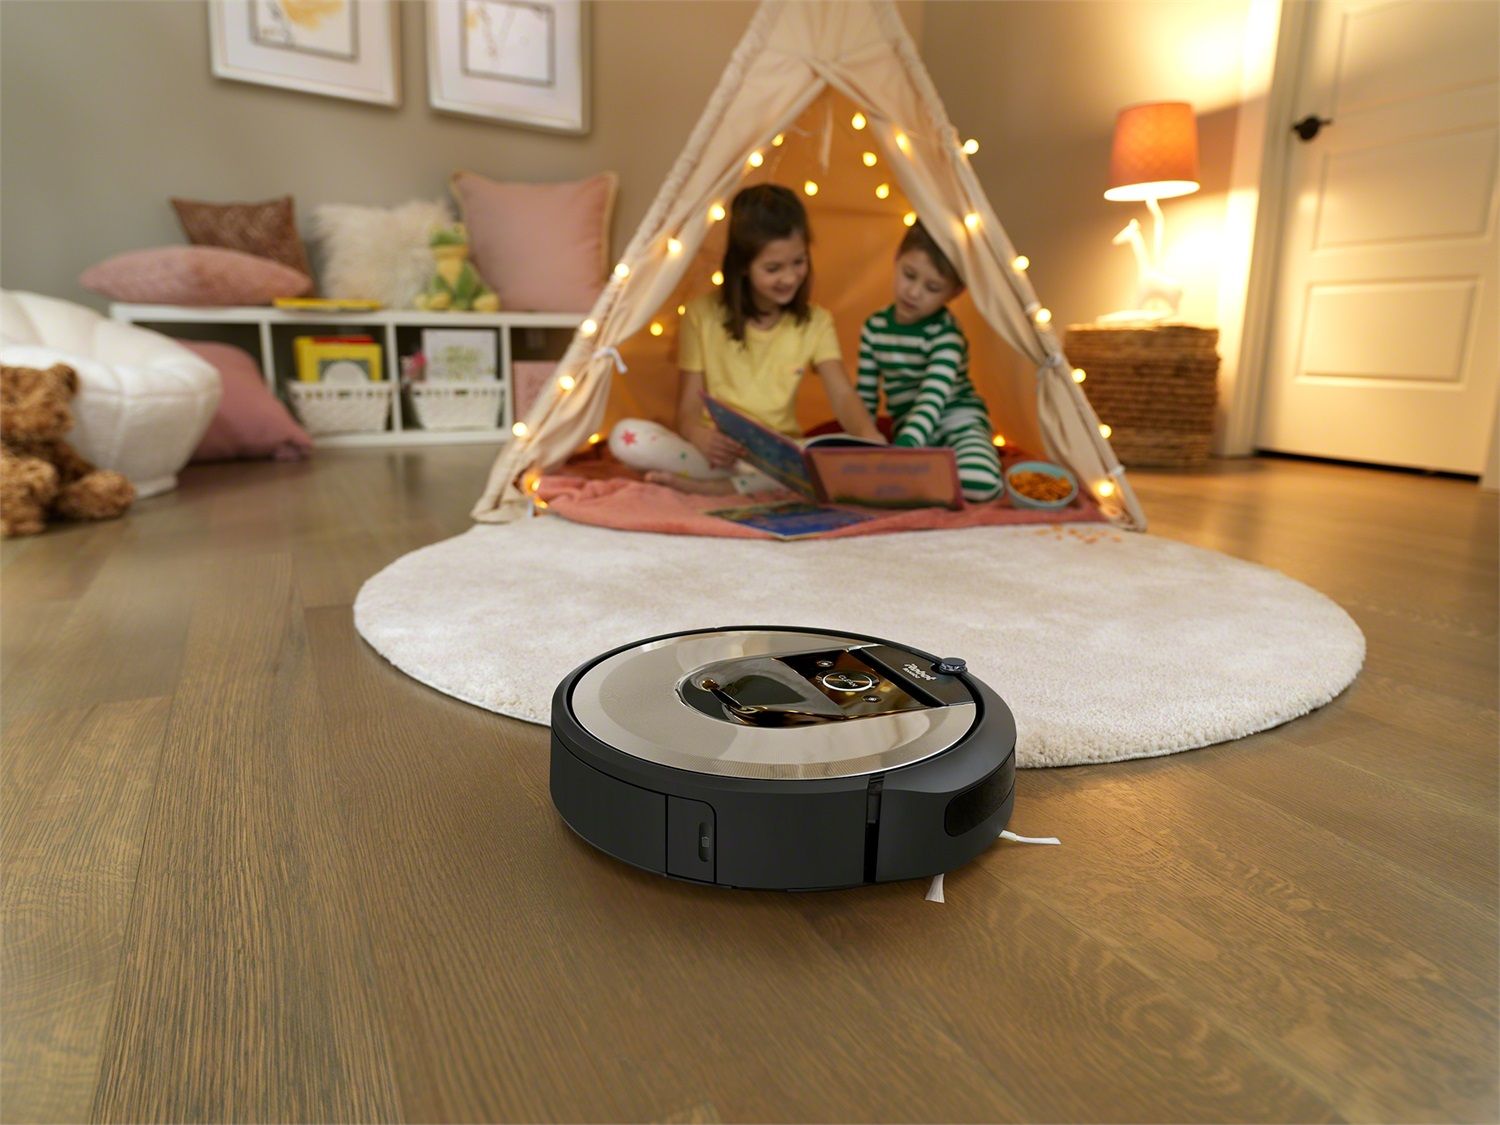 Il robot aspirapolvere iRobot Roomba 980 mappa le stanze e si